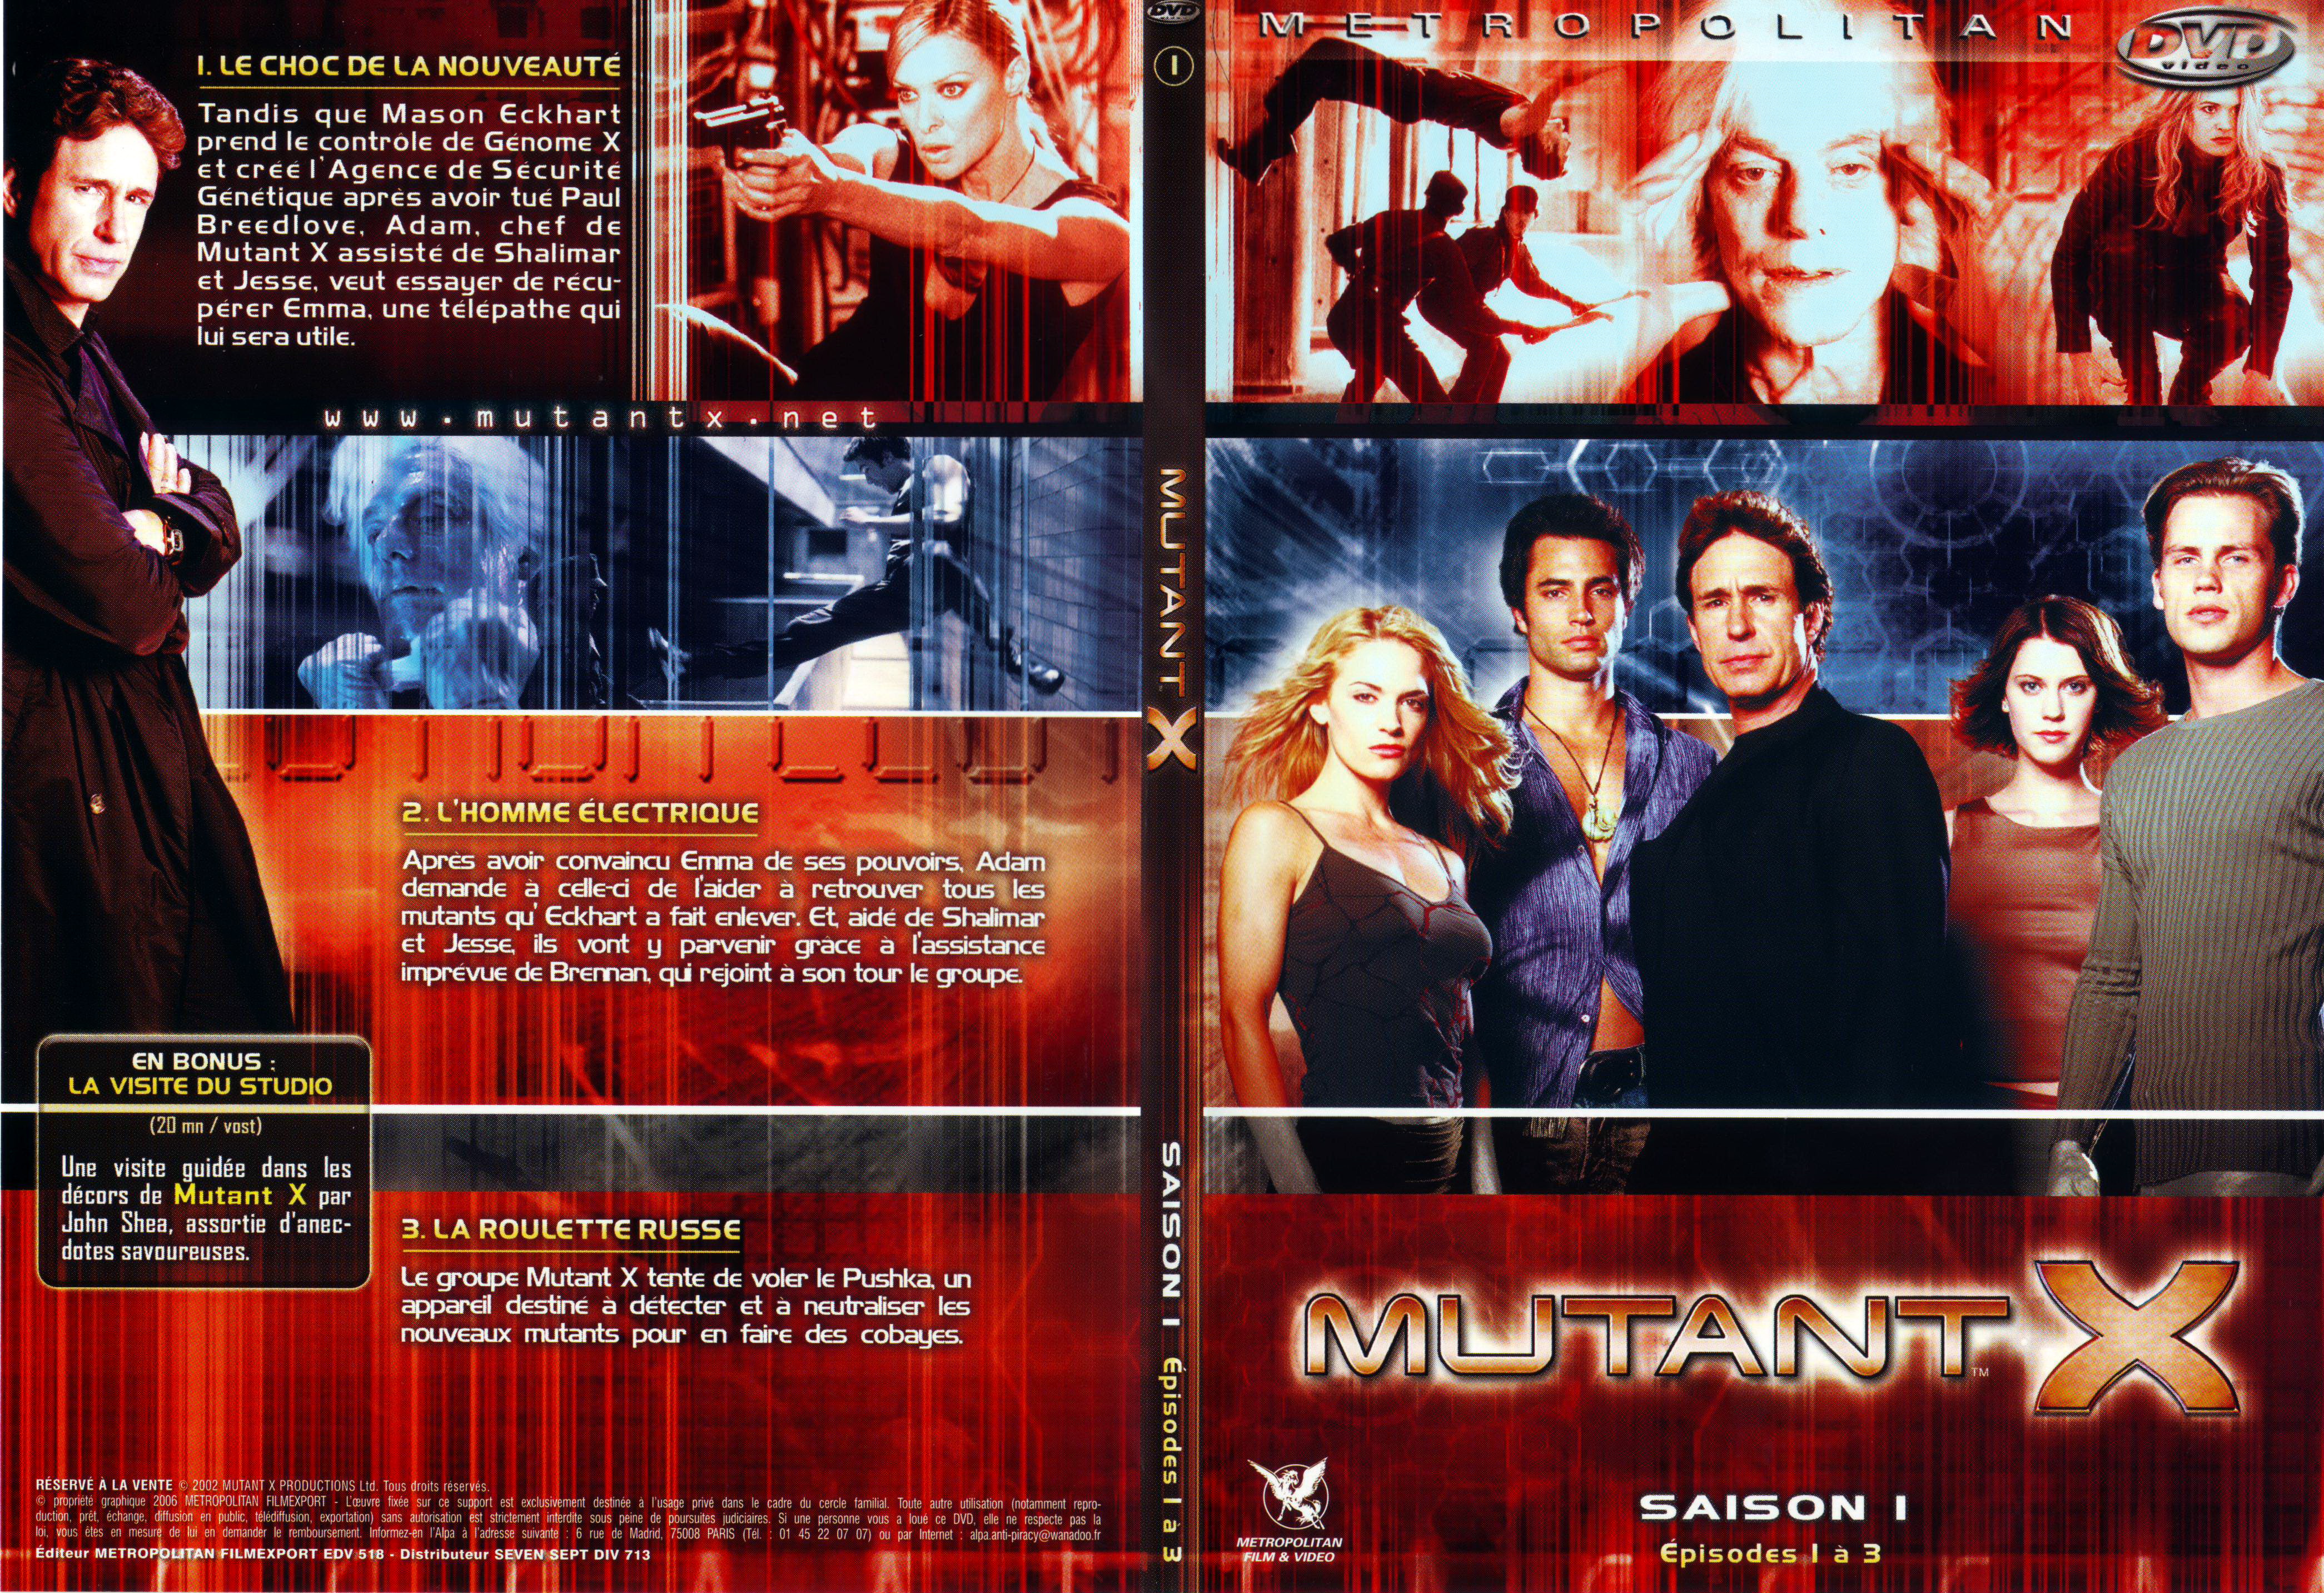 Jaquette DVD Mutant X saison 1 DVD 1